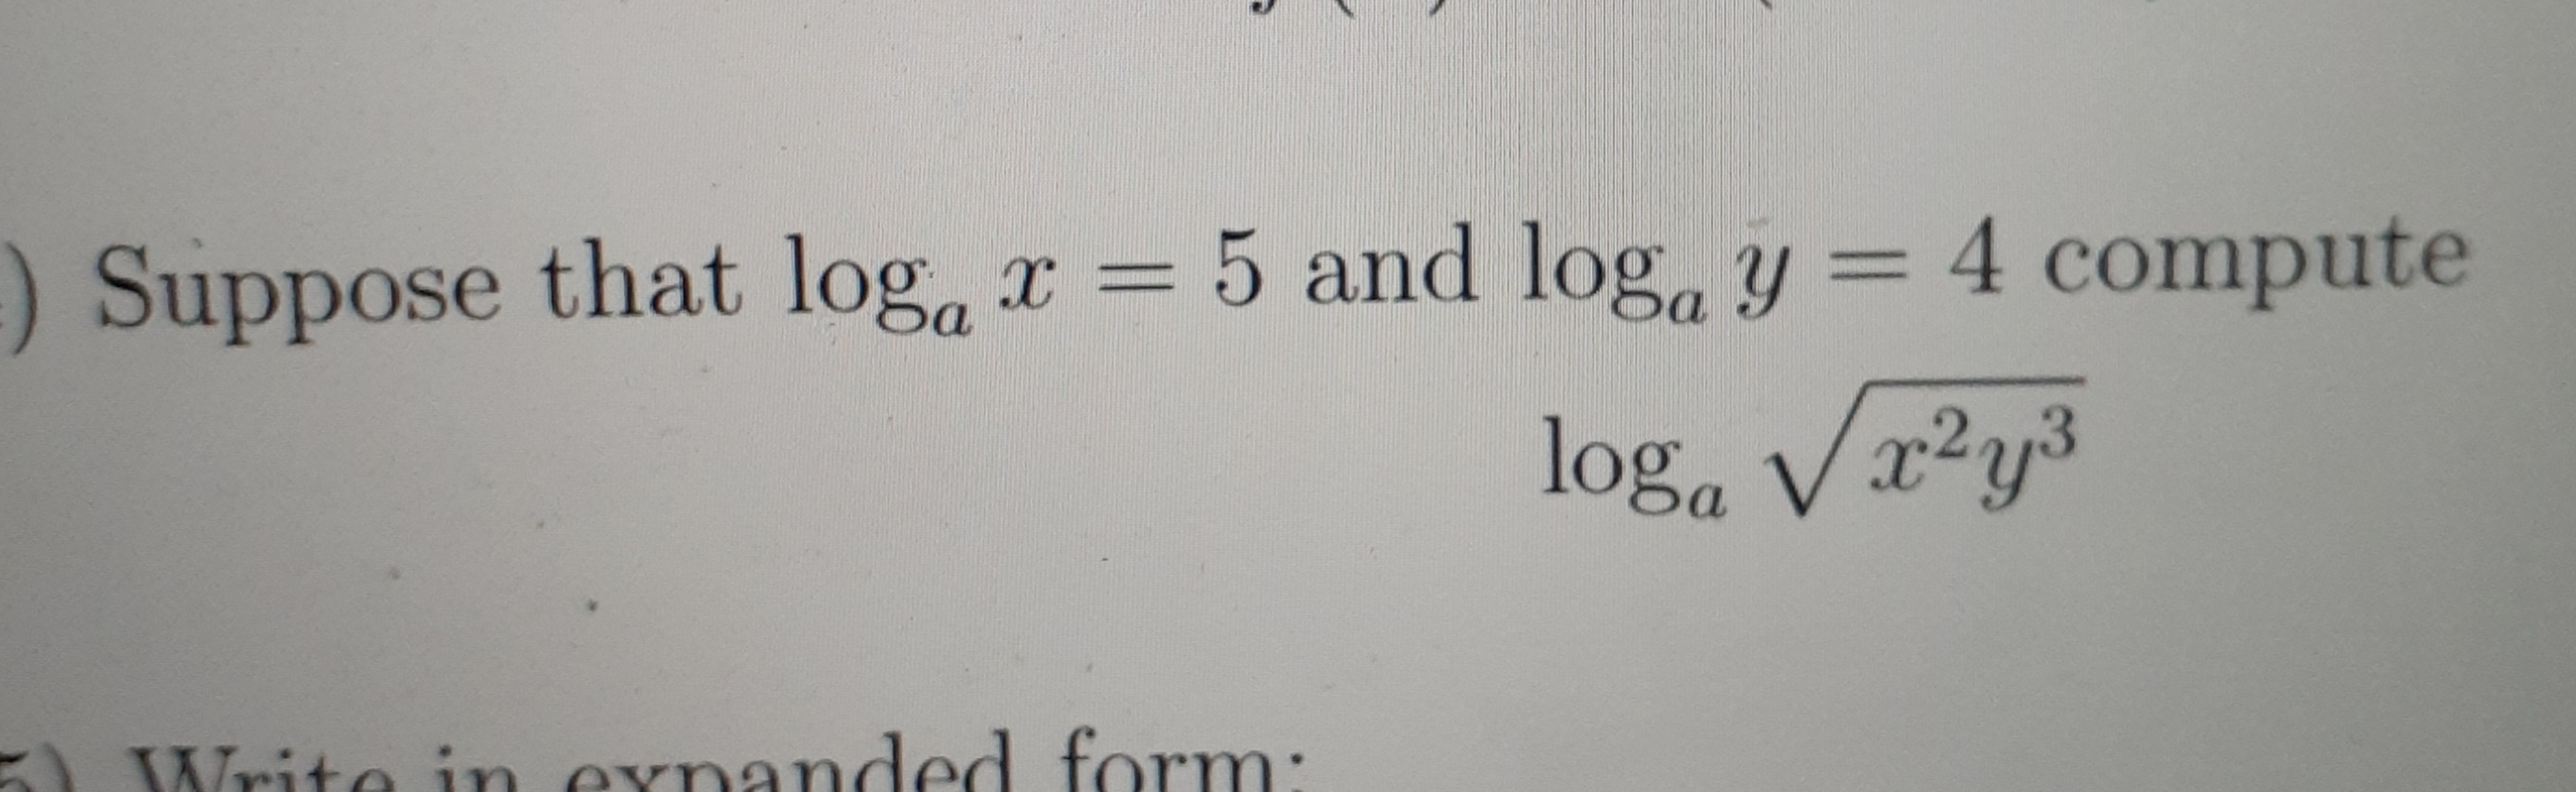 Suppose that log, x = 5 and log, y = 4 compute
%3|
log, Vx²y³
